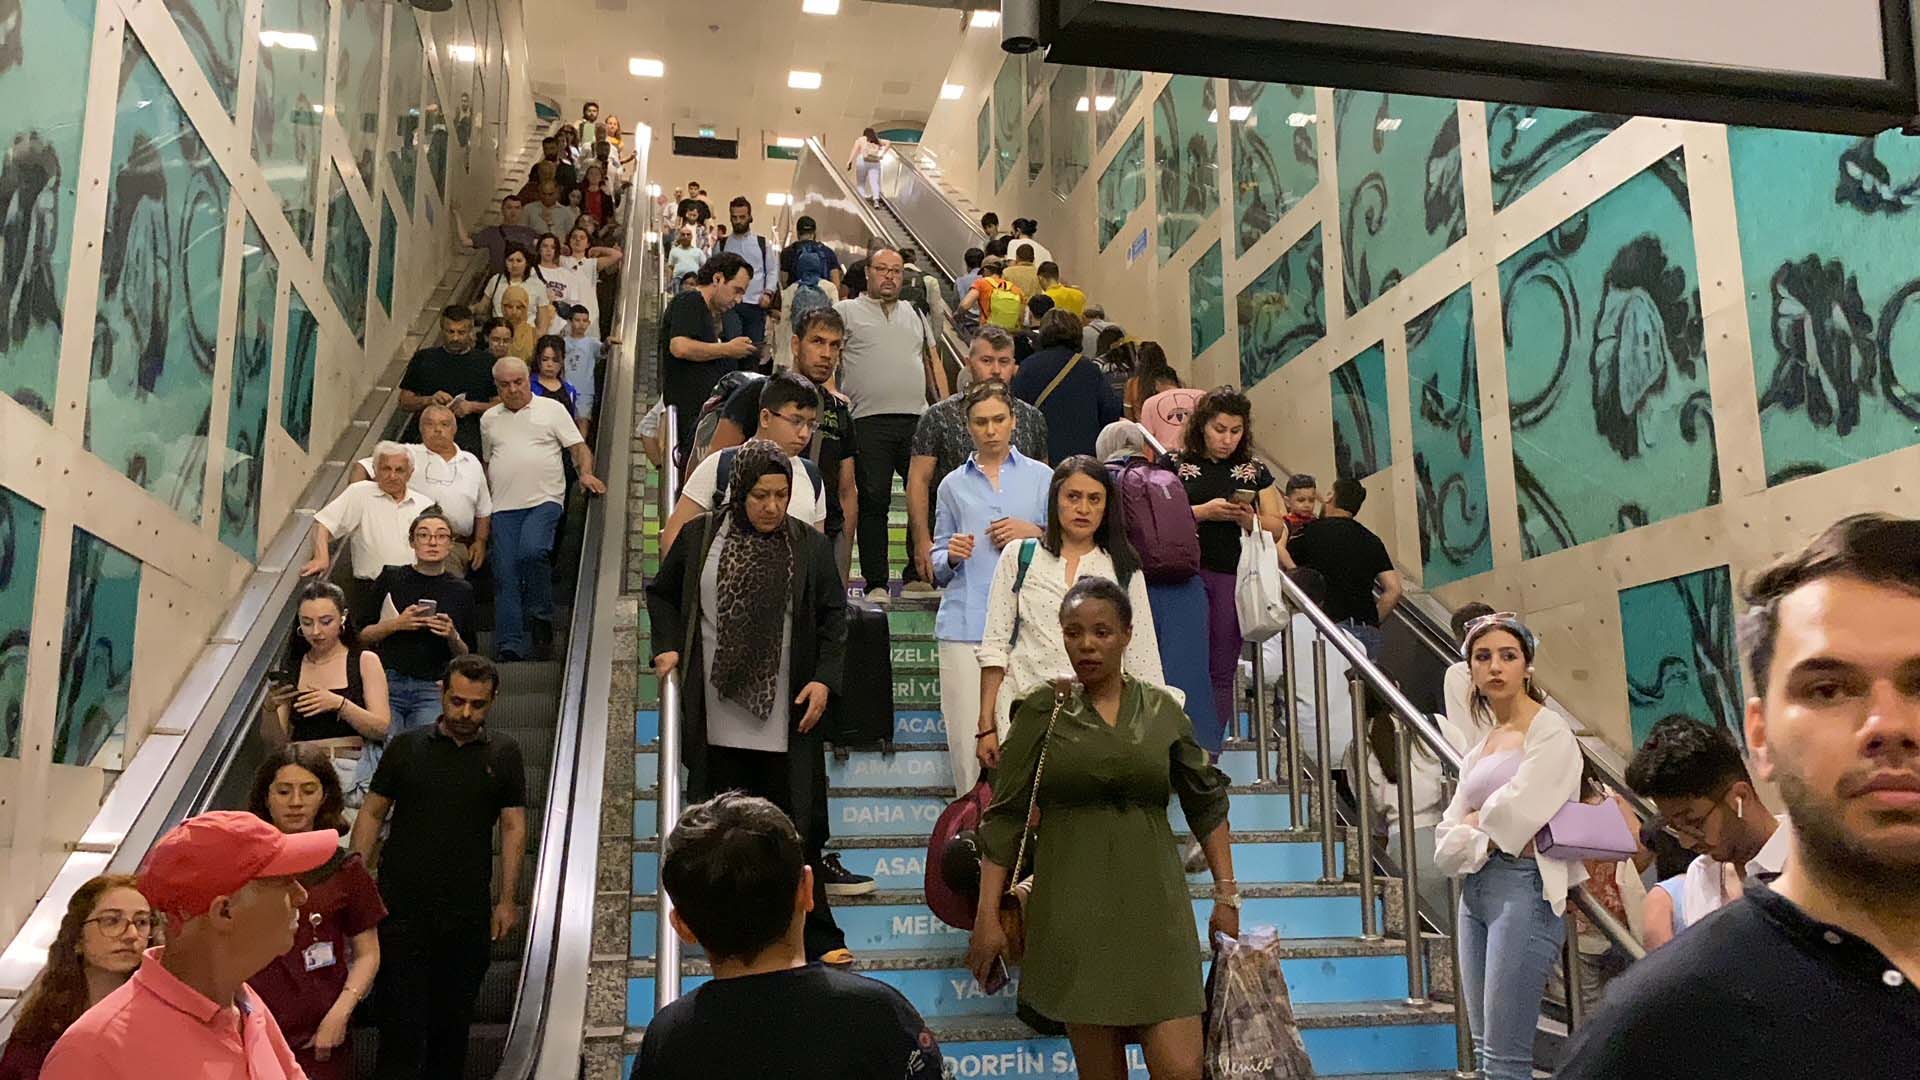  Yenikapı-Hacıosman metrosundaki teknik arıza isyan ettirdi! Vatandaşlar çileden çıktı 